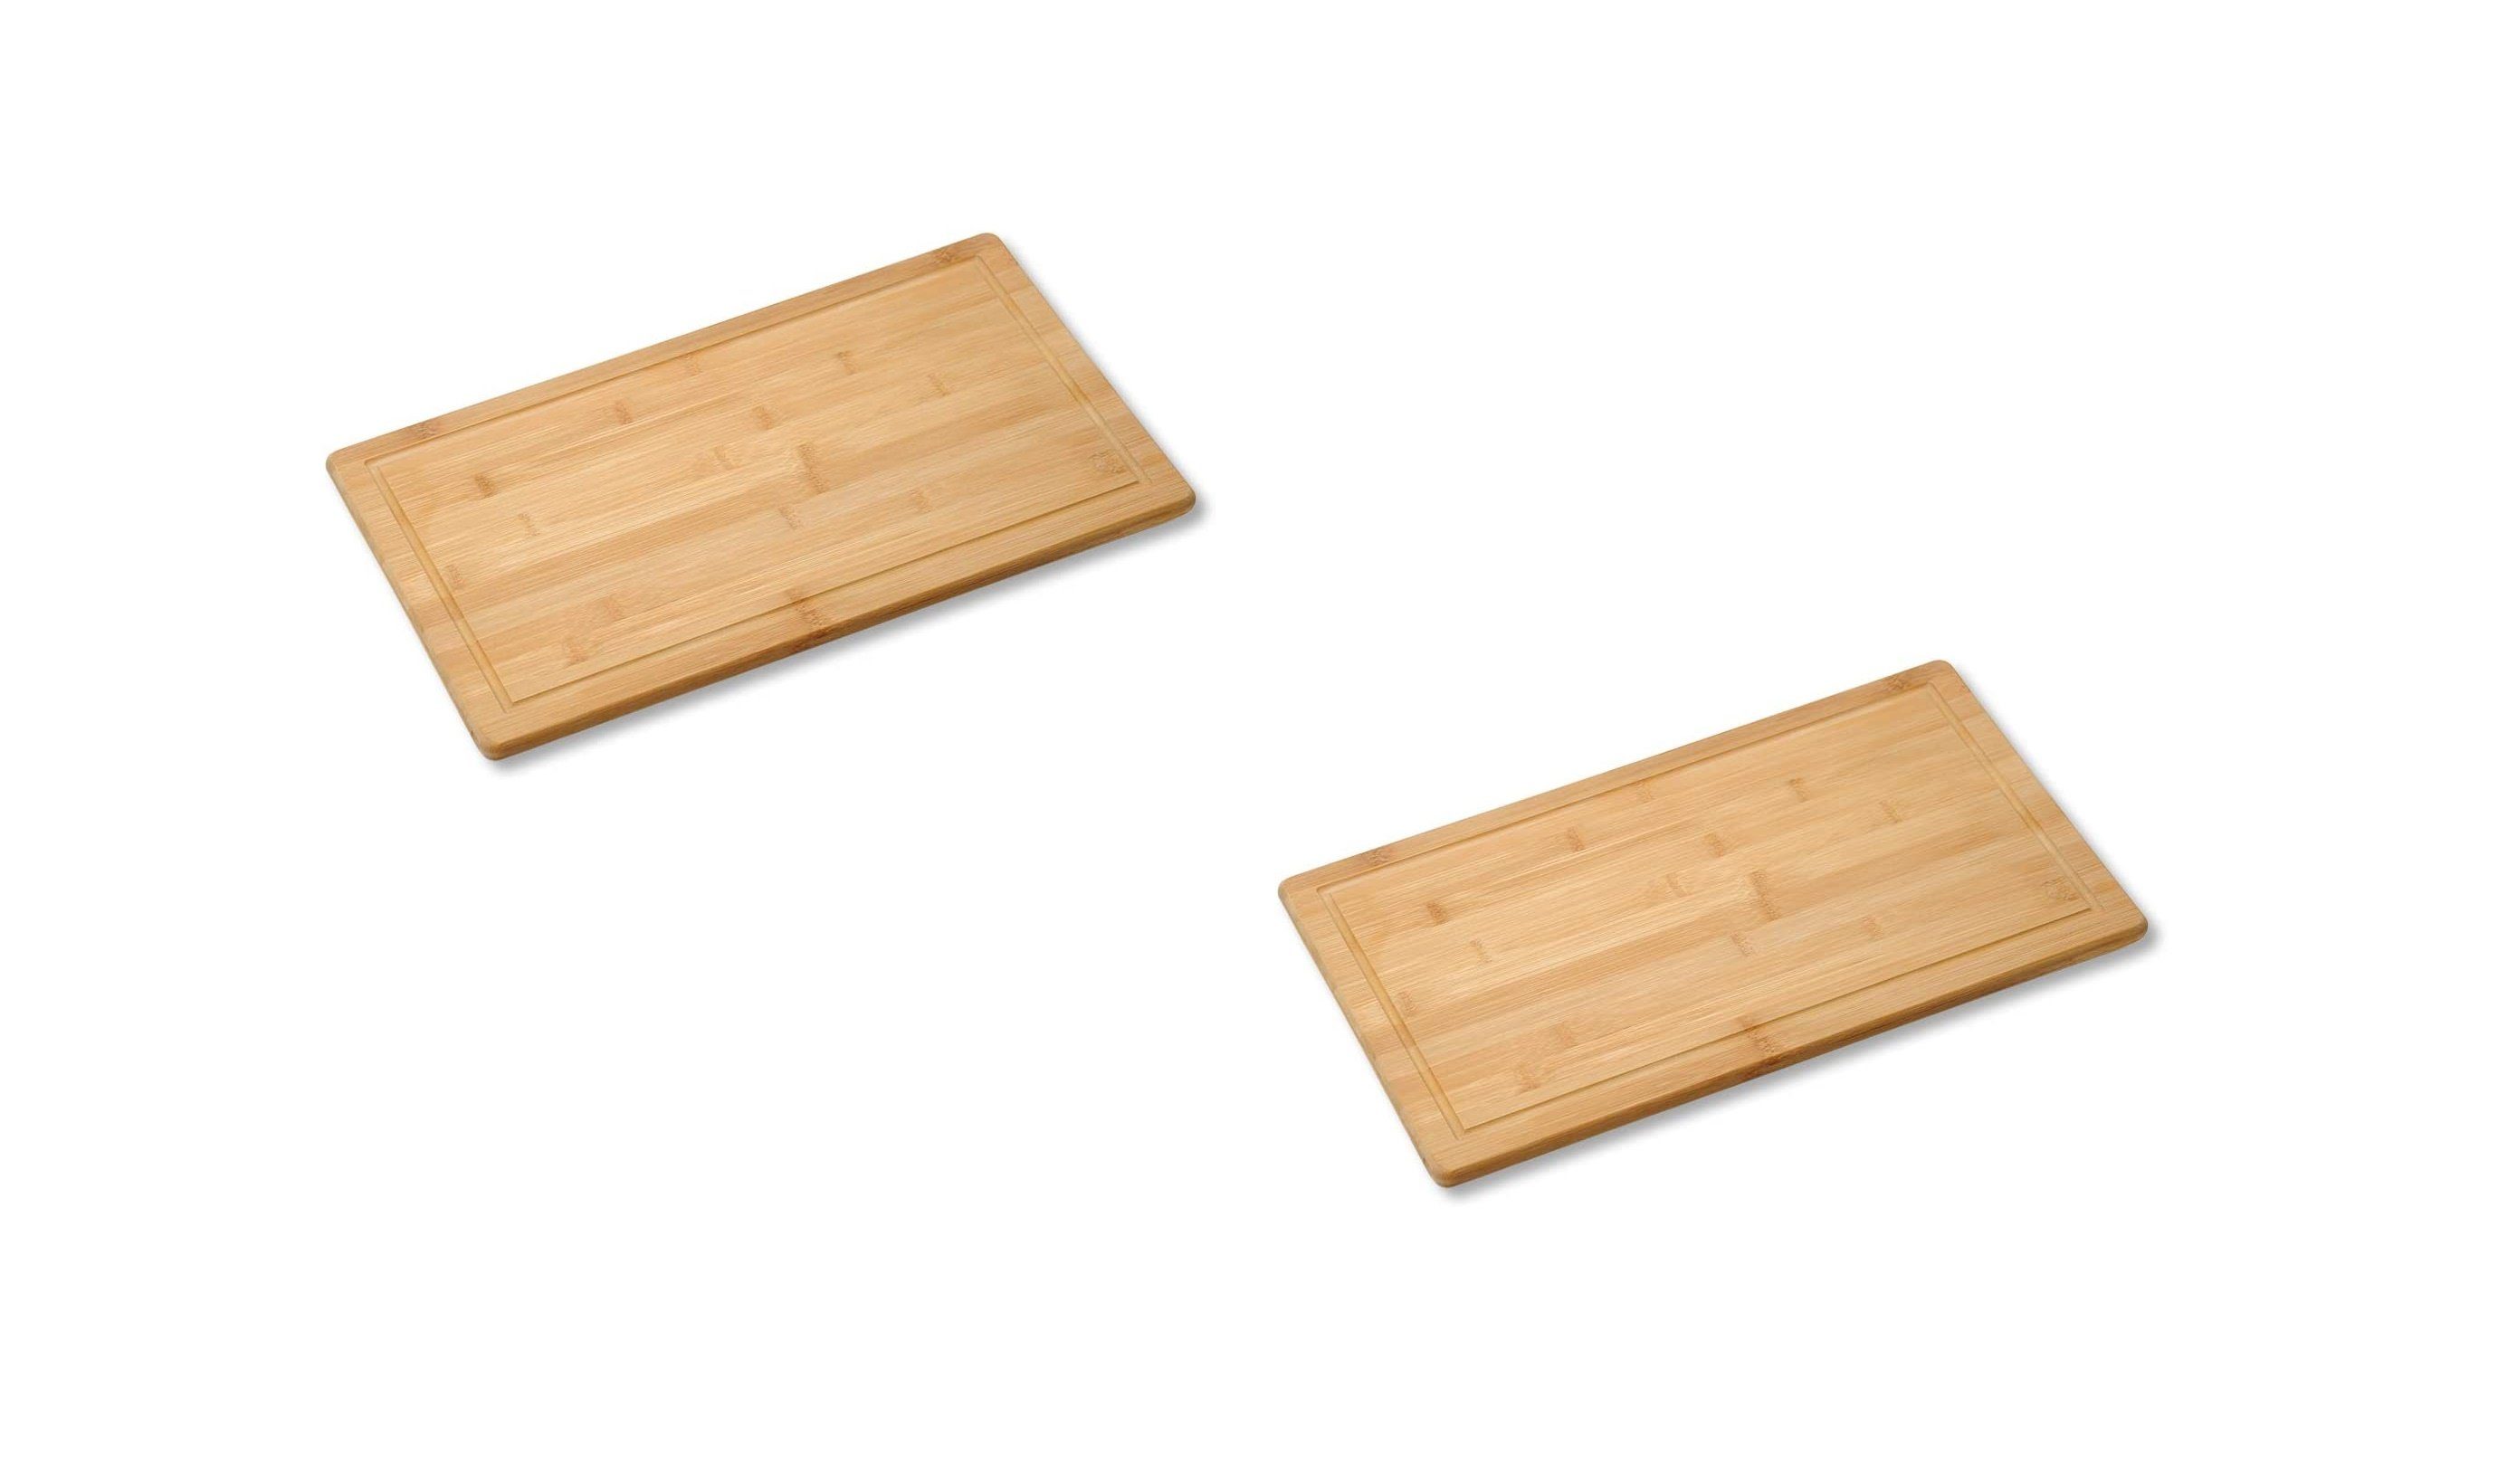 Neustanlo Schneide- und Abdeckplatte 2 Stück Schneide- und Abdeckplatte Bambusholz Holz 50x28x4 cm braun | Herdabdeckplatten